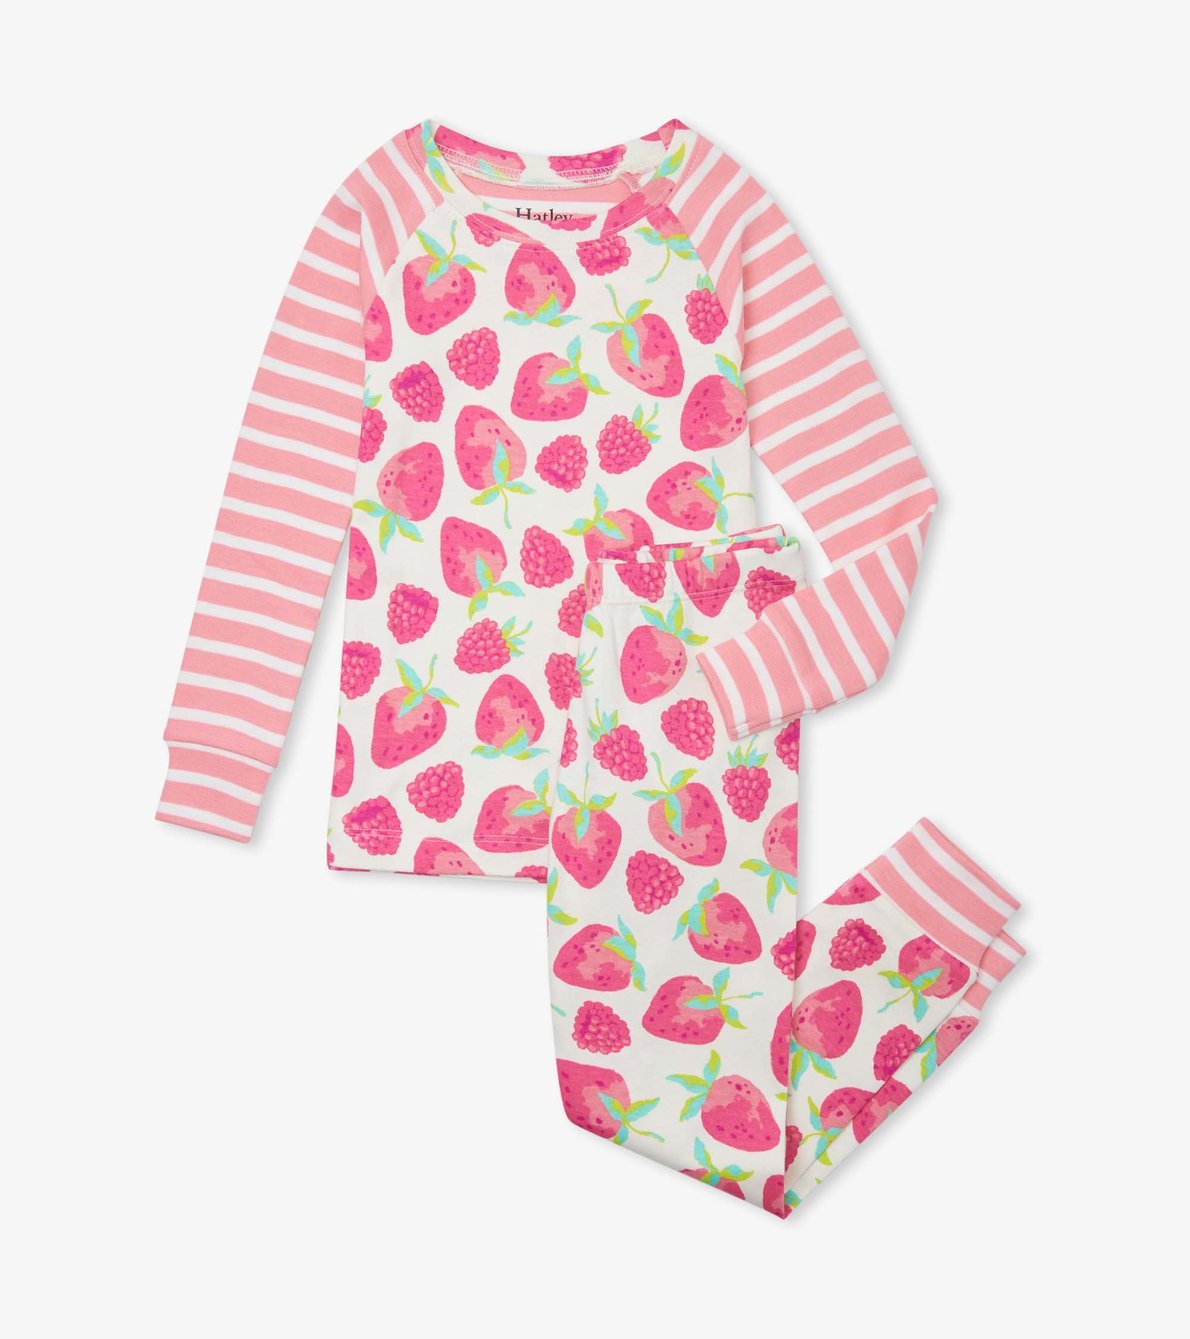 View larger image of Delicious Berries Organic Cotton Raglan Pajama Set